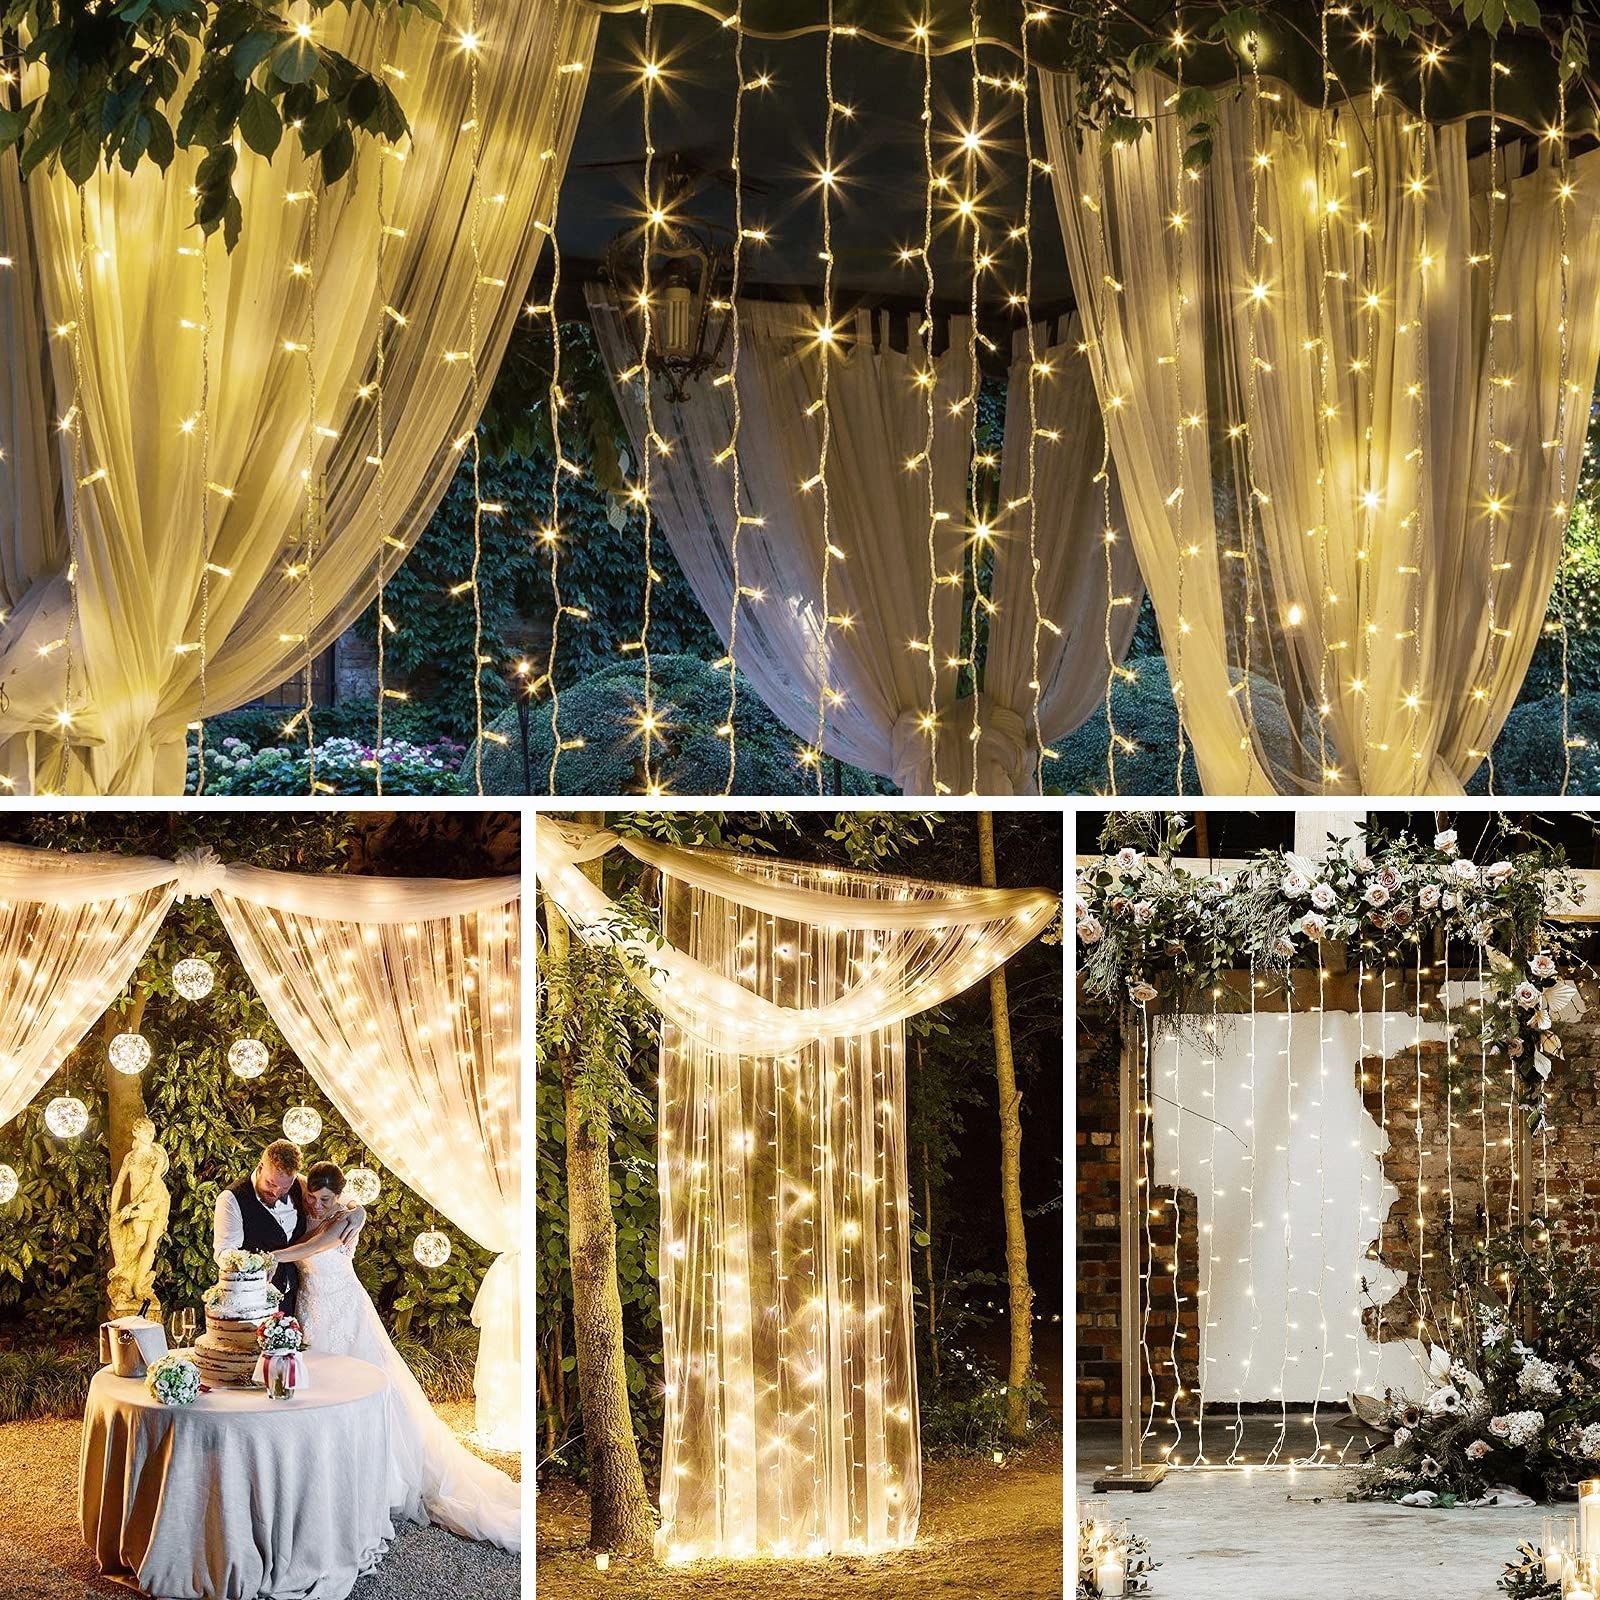 Rideau lumineux à LED, filet lumineux 3m x 3m rideaux de chaînes lumineuses  300 LEDs chaîne lumineuse, rideau lumineux pour mariage, jardin, balcon,  fête extérieure / intérieure 